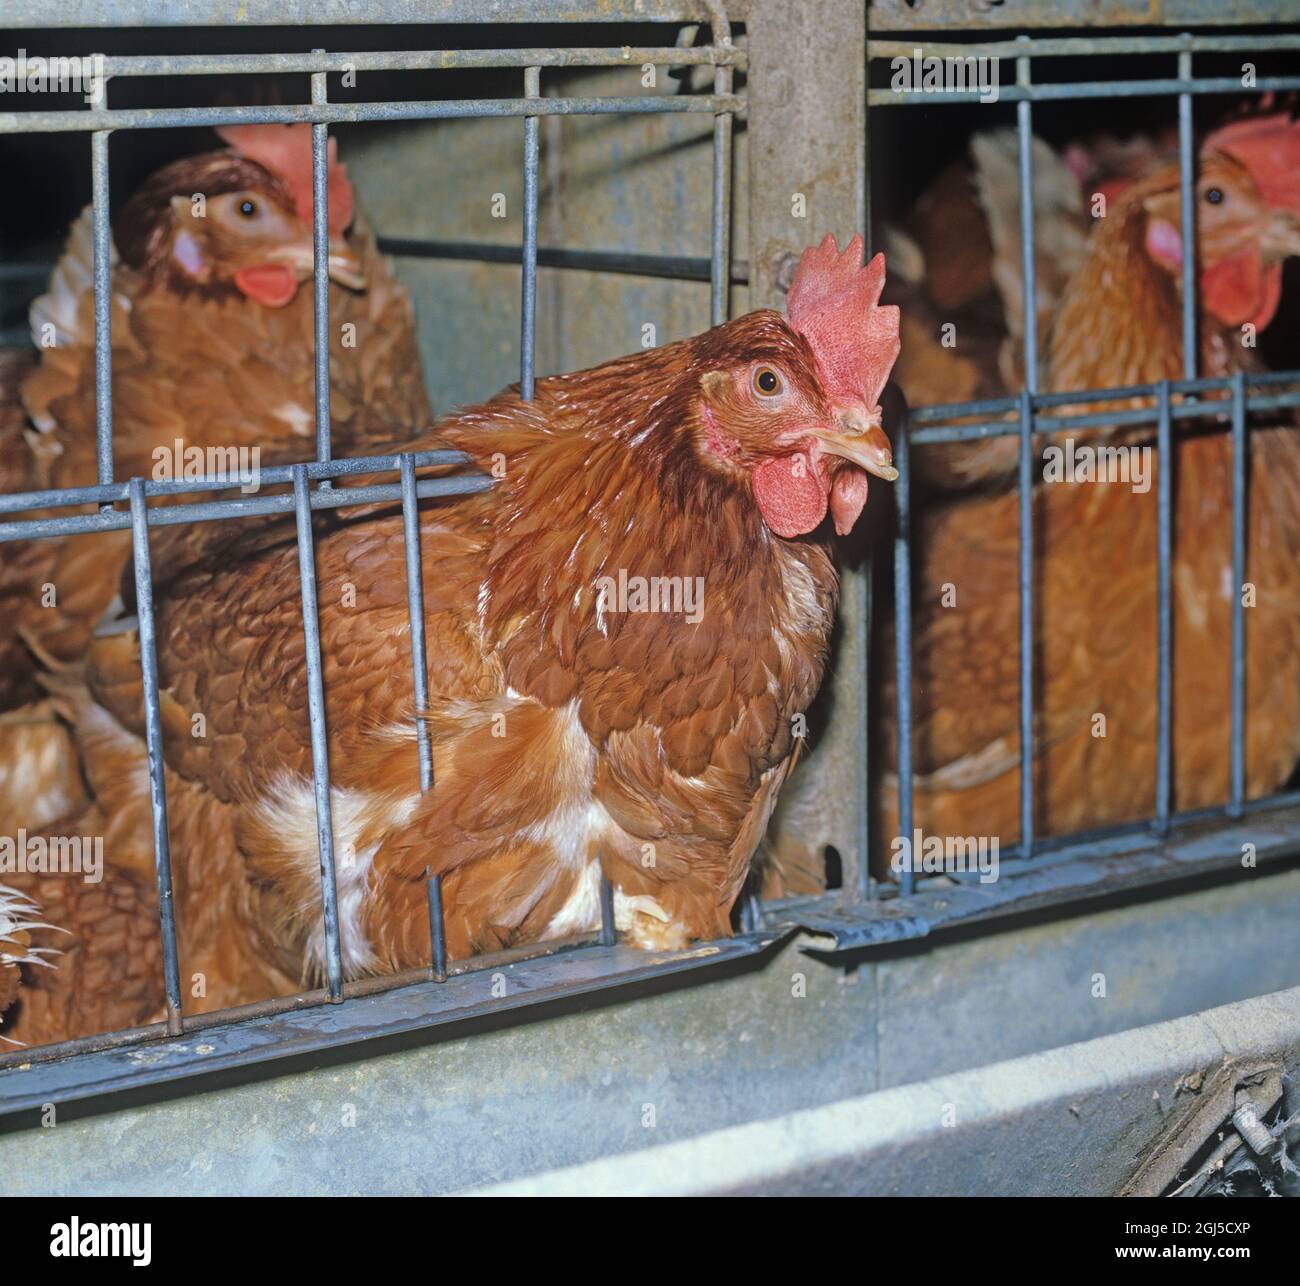 Galline batteria (isa marrone) uova che posano polli in gabbie confinate con una certa perdita di piuma, mostra l'accesso a mangiando trogolo Foto Stock